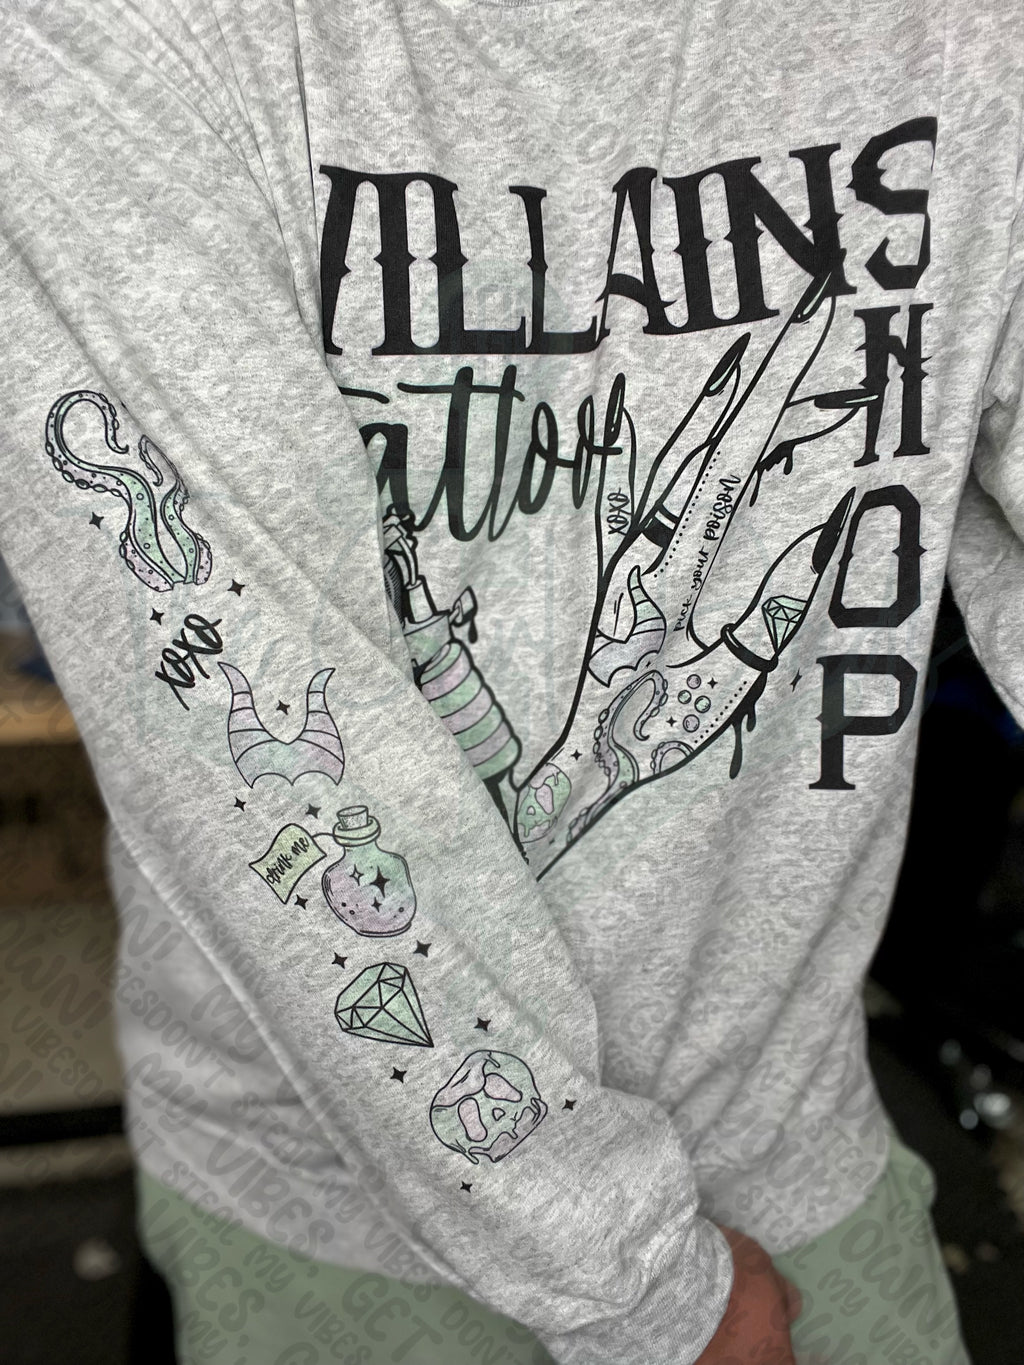 Villains Tattoo Shop Top Design